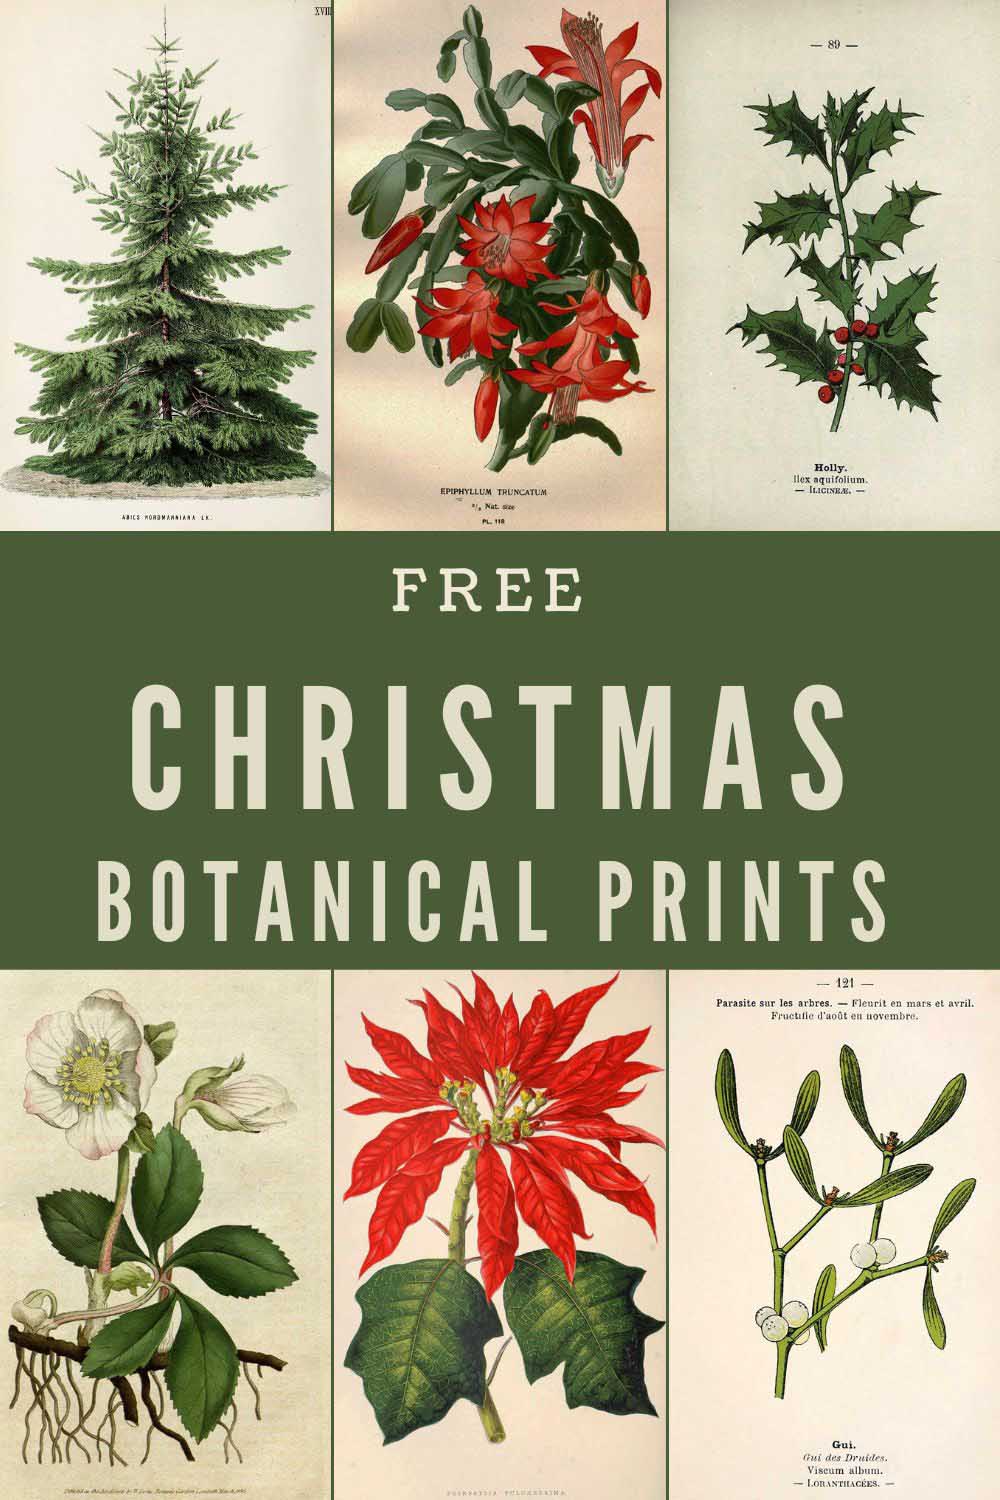 Chistmas Botanical Prints